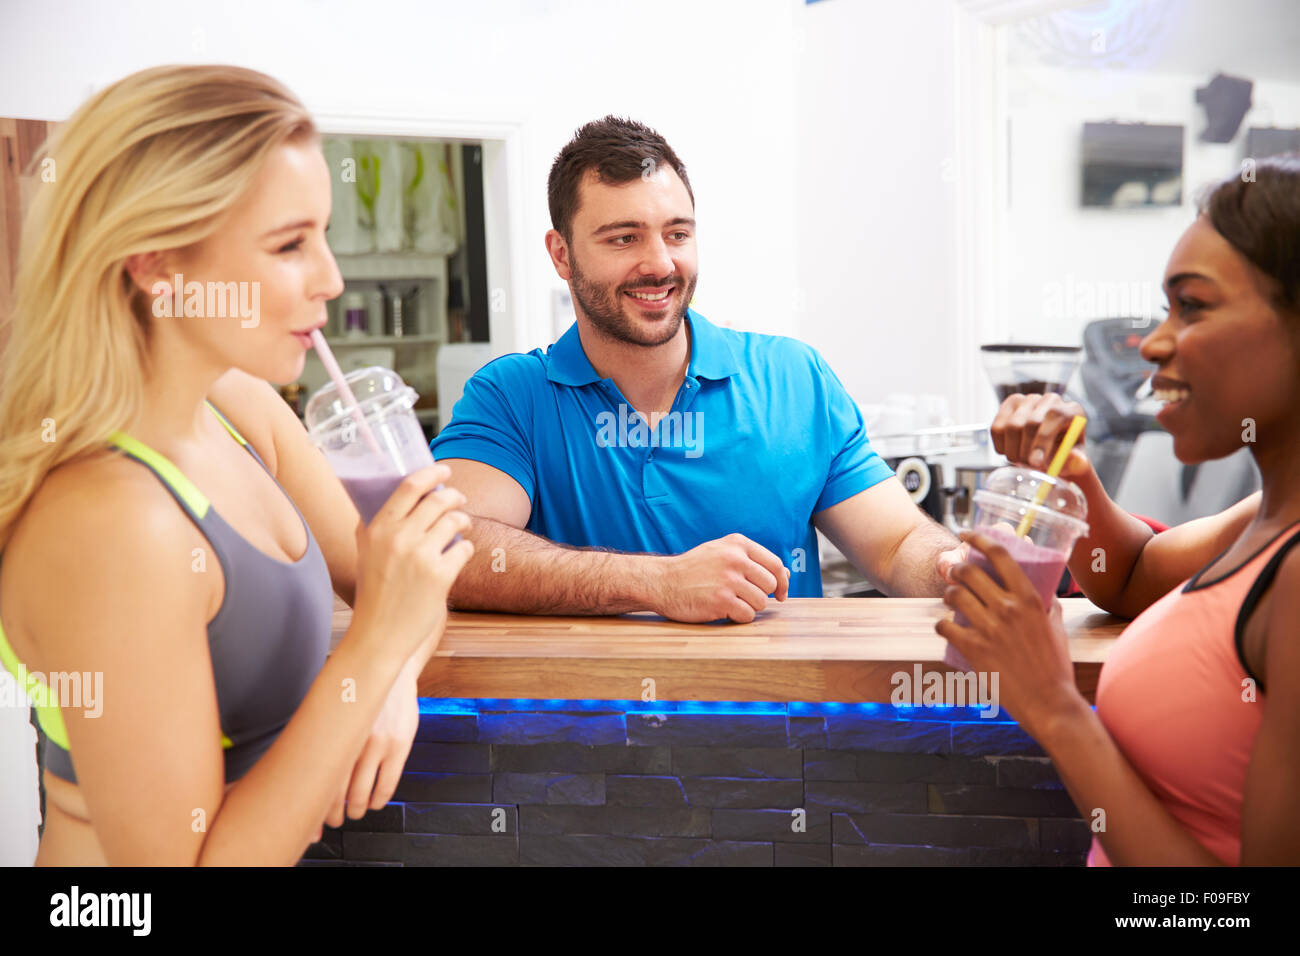 Menschen trinken Protein shakes in der Fitness-Bar in einem Fitnessstudio Stockfoto